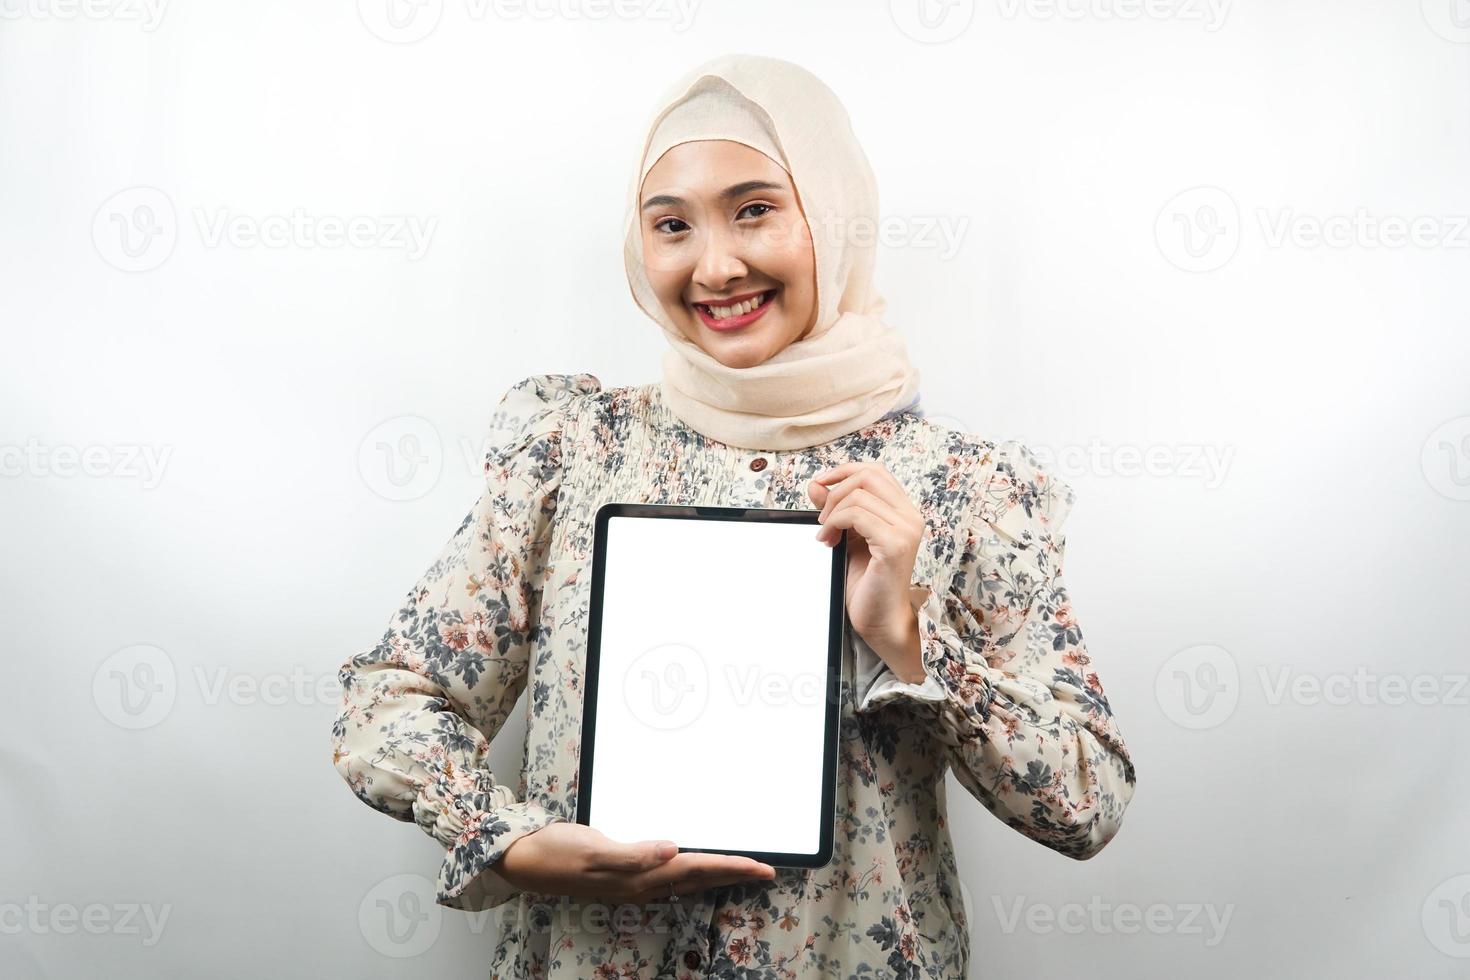 belle jeune femme musulmane asiatique souriante, excitée et joyeuse tenant une tablette avec un écran blanc ou vide, faisant la promotion de l'application, faisant la promotion du produit, présentant quelque chose, isolée sur fond blanc photo